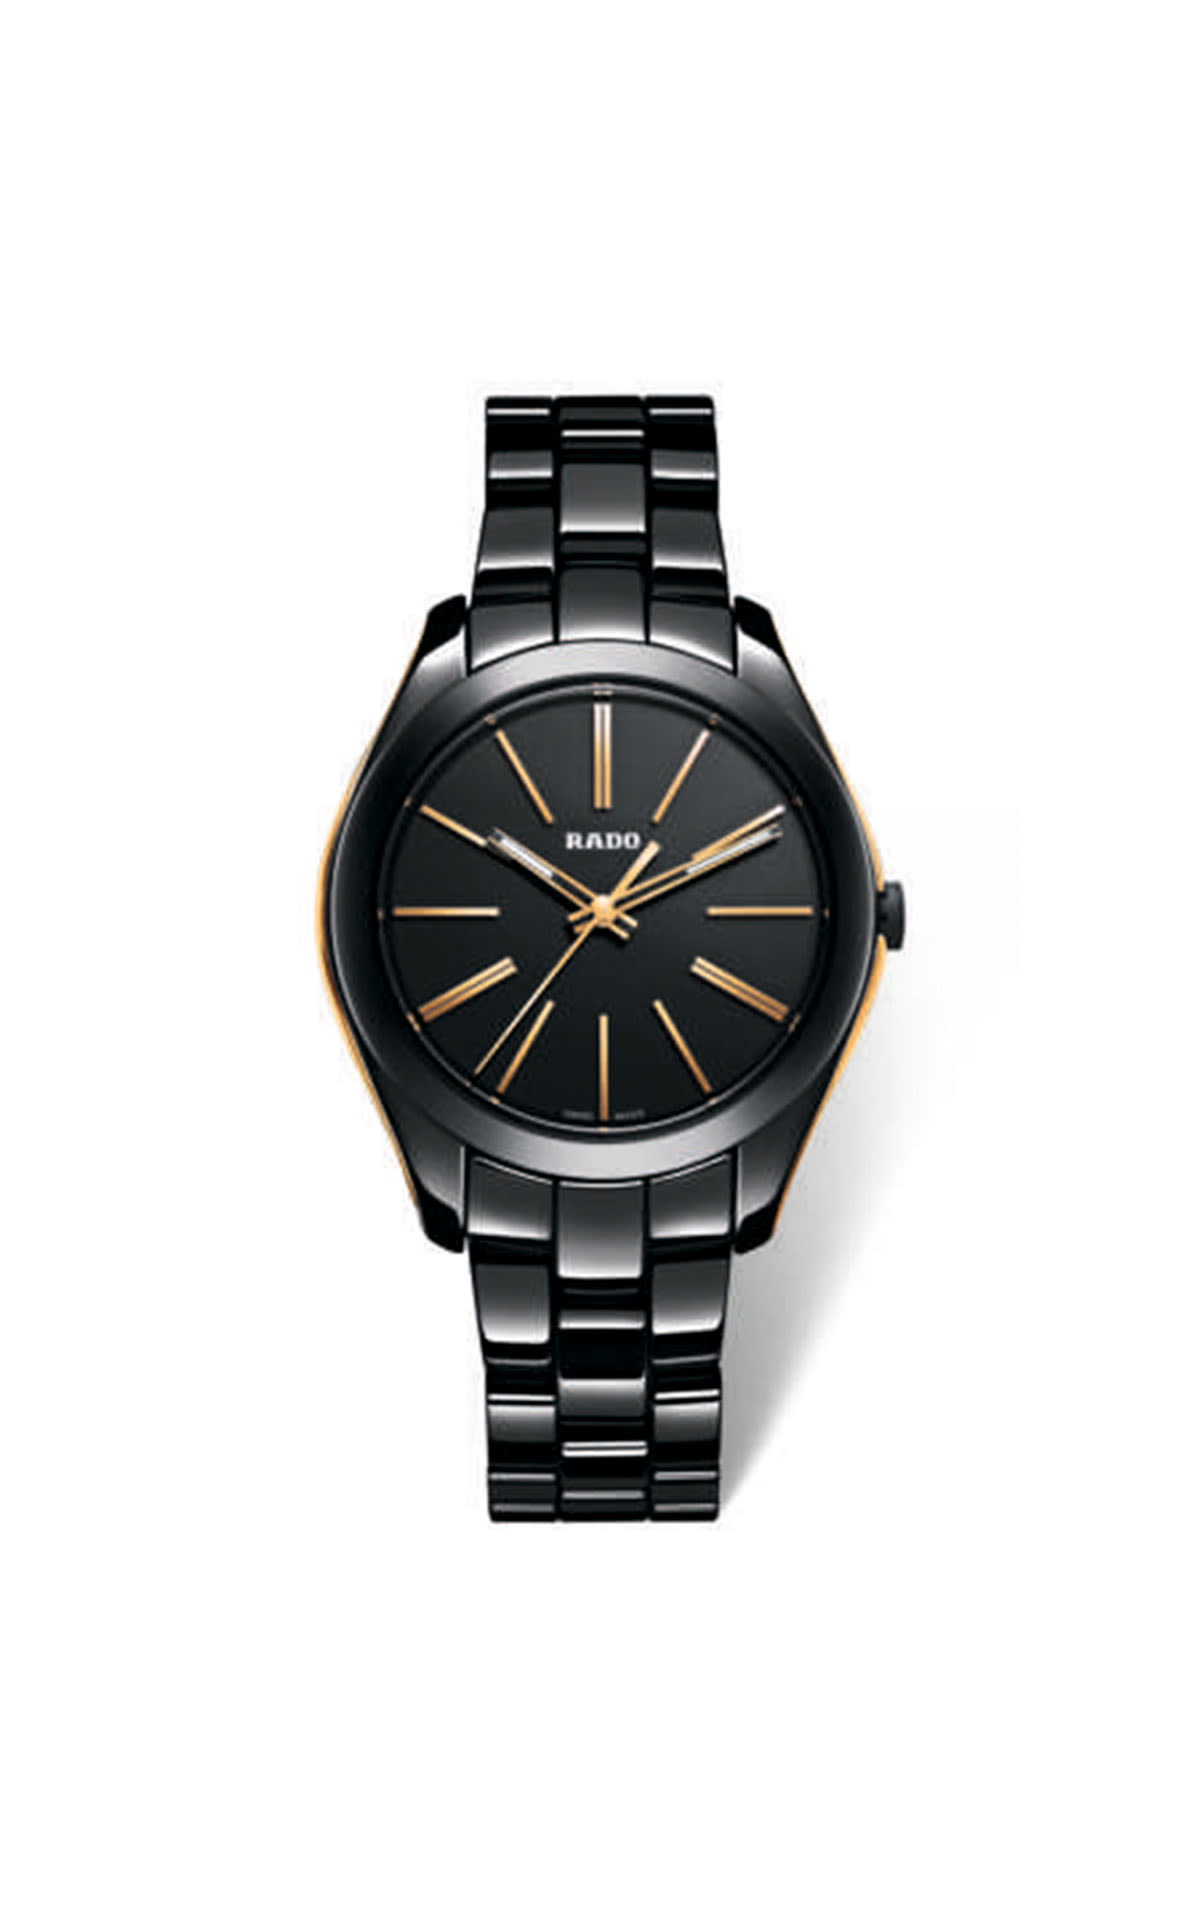 Black Rado watch with golden details